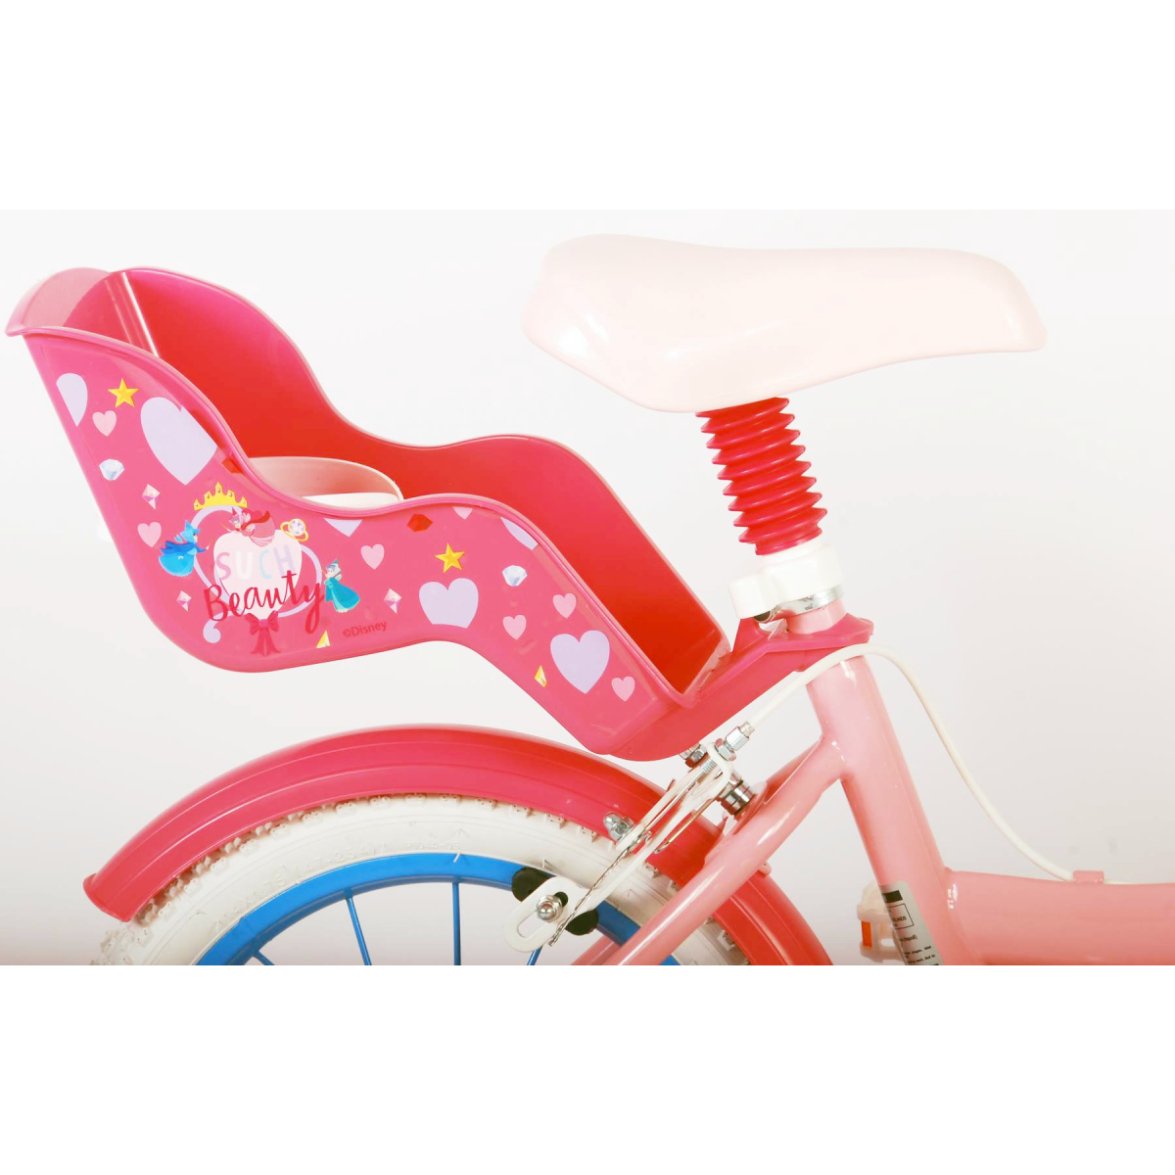 Vaikiškas dviratis VOLARE 14" Disney Princess (21562) rožinis - 3